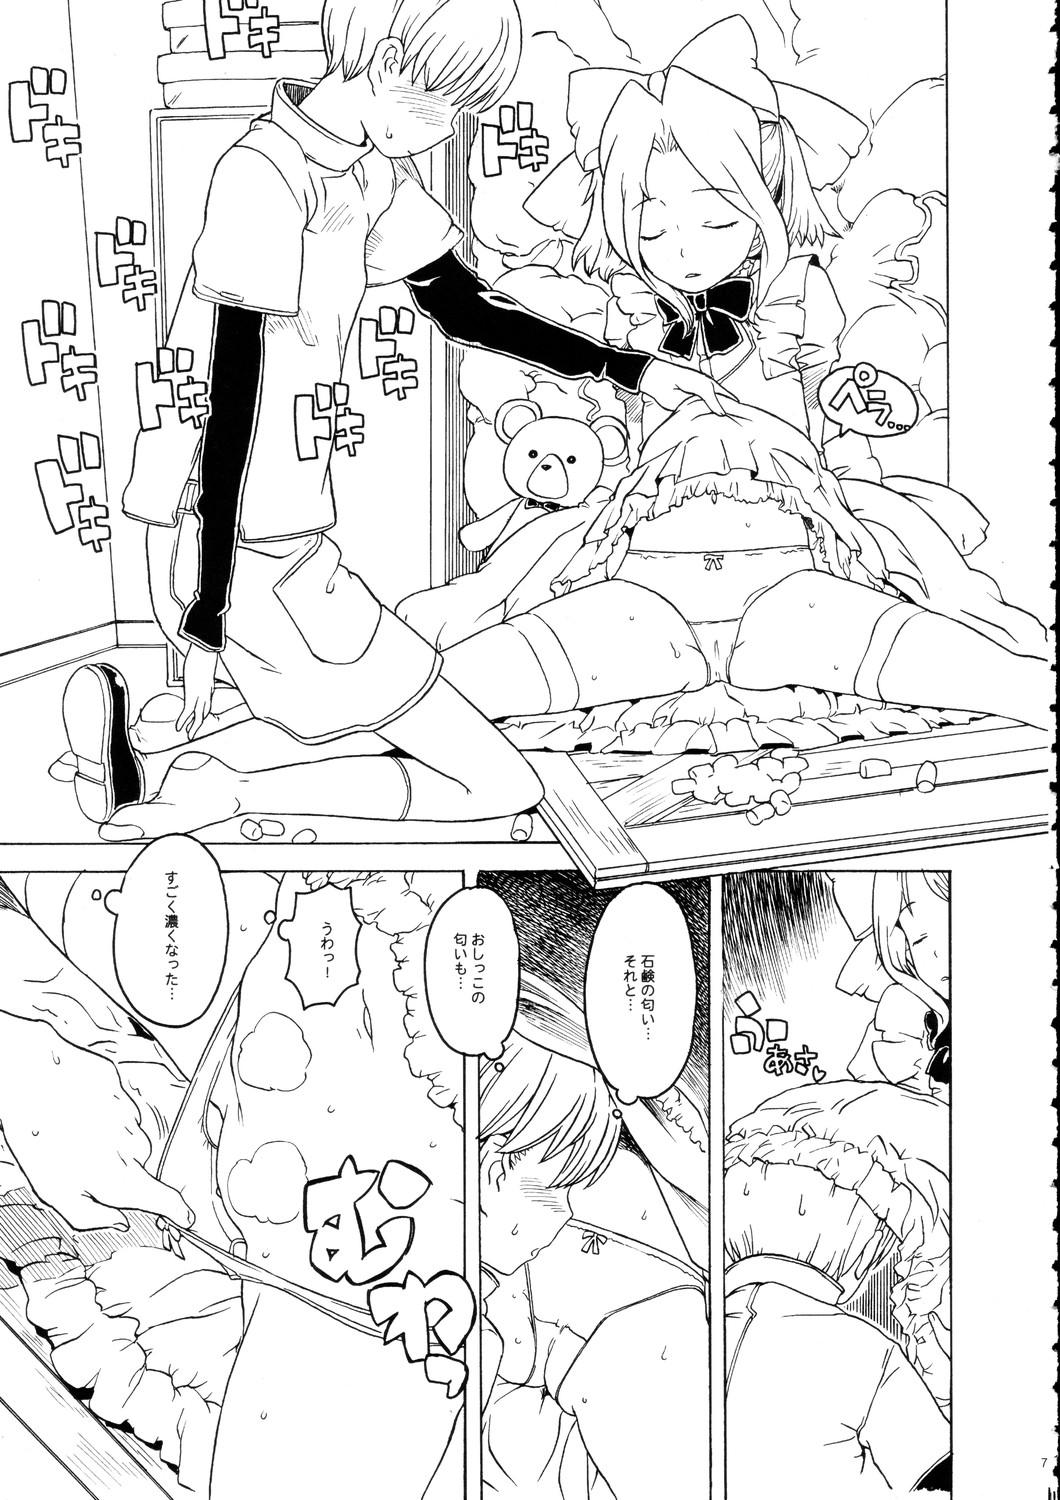 Topless Minna Igai no Neta Vol 2 - Sakura taisen Di gi charat Lucu lucu Hidden - Page 7